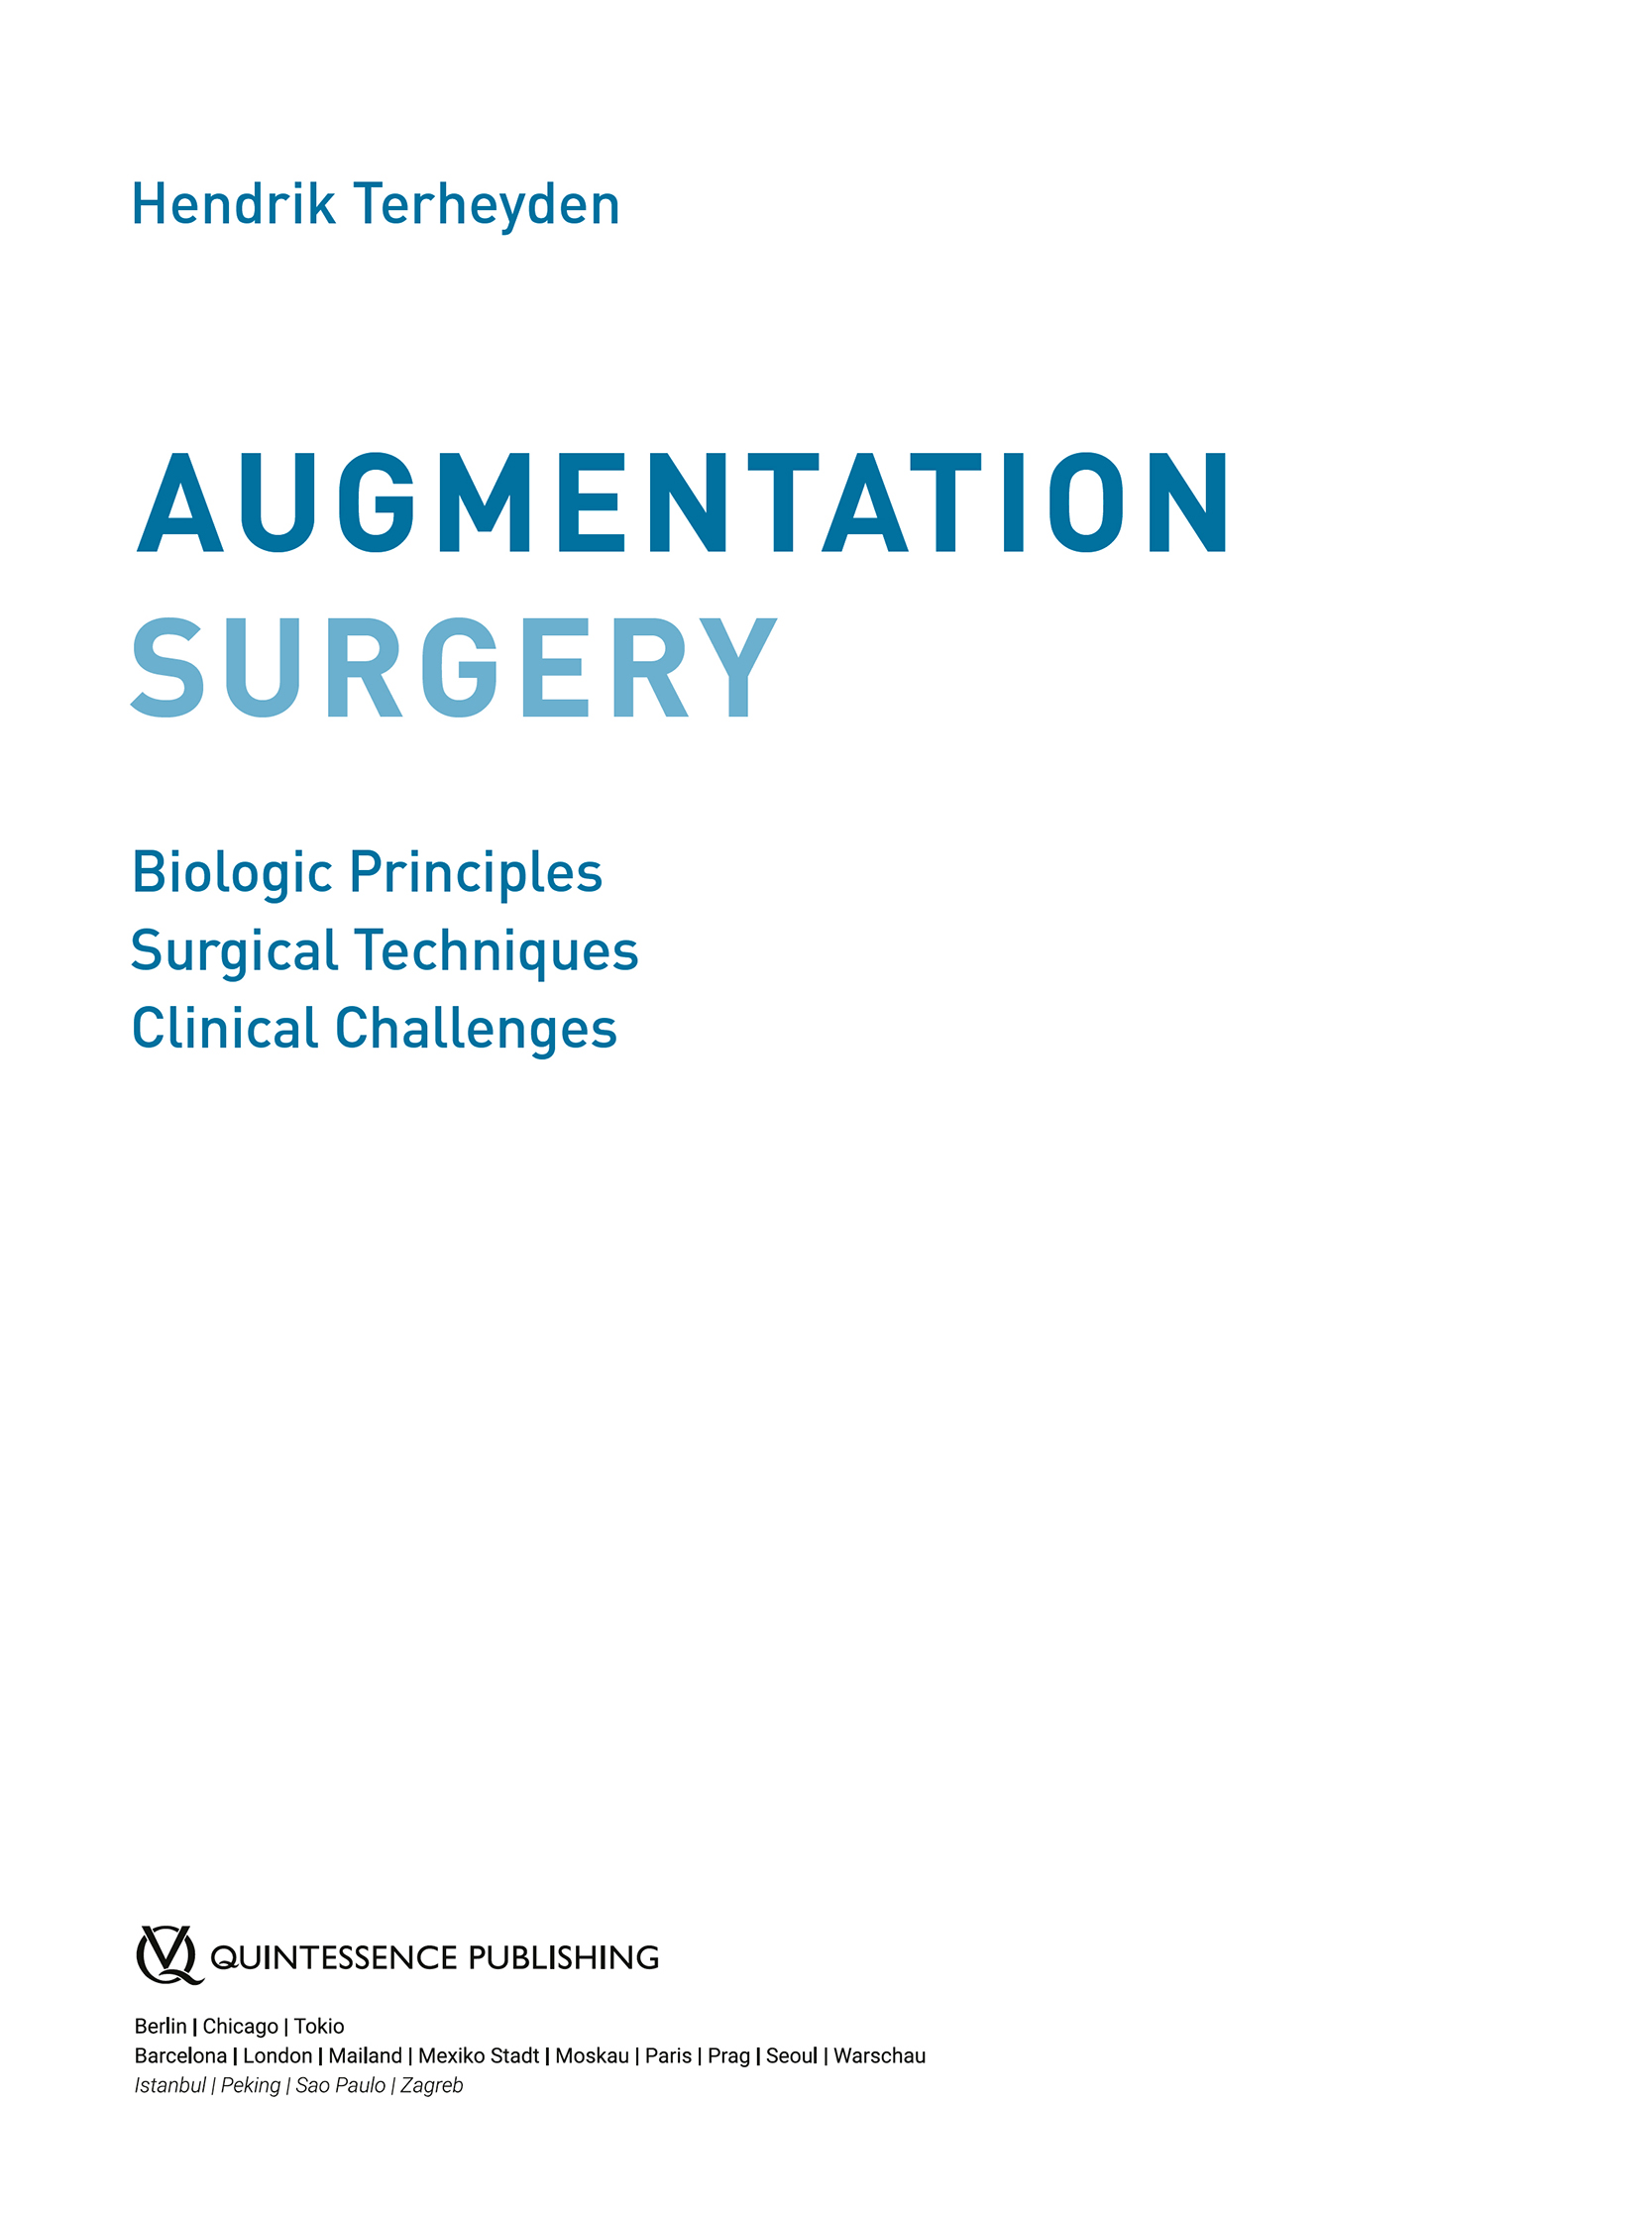 Augmentation Surgery Biologic Principles Surgical Techniques Clinical Challenges - image 3